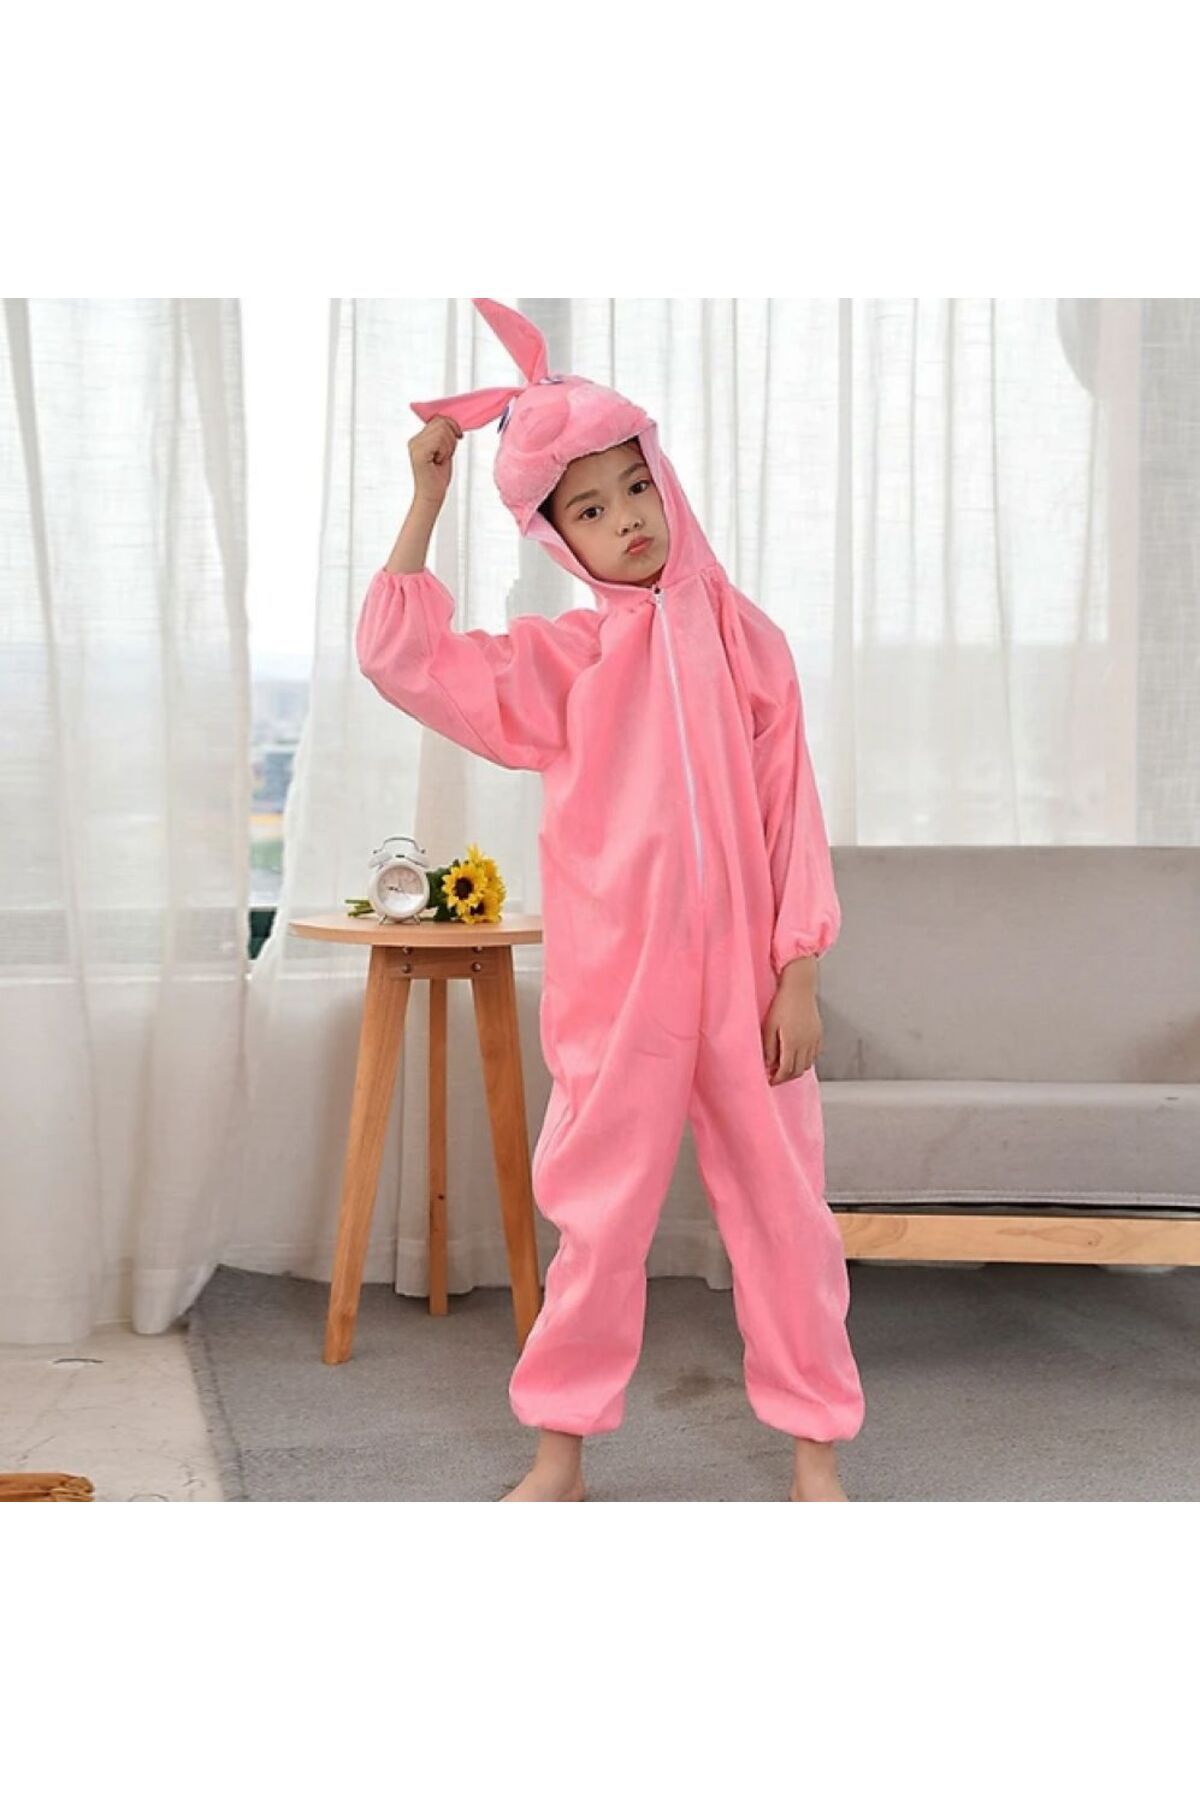 Skygo Çocuk Tavşan Kostümü Pembe Renk 4-5 Yaş 100 cm